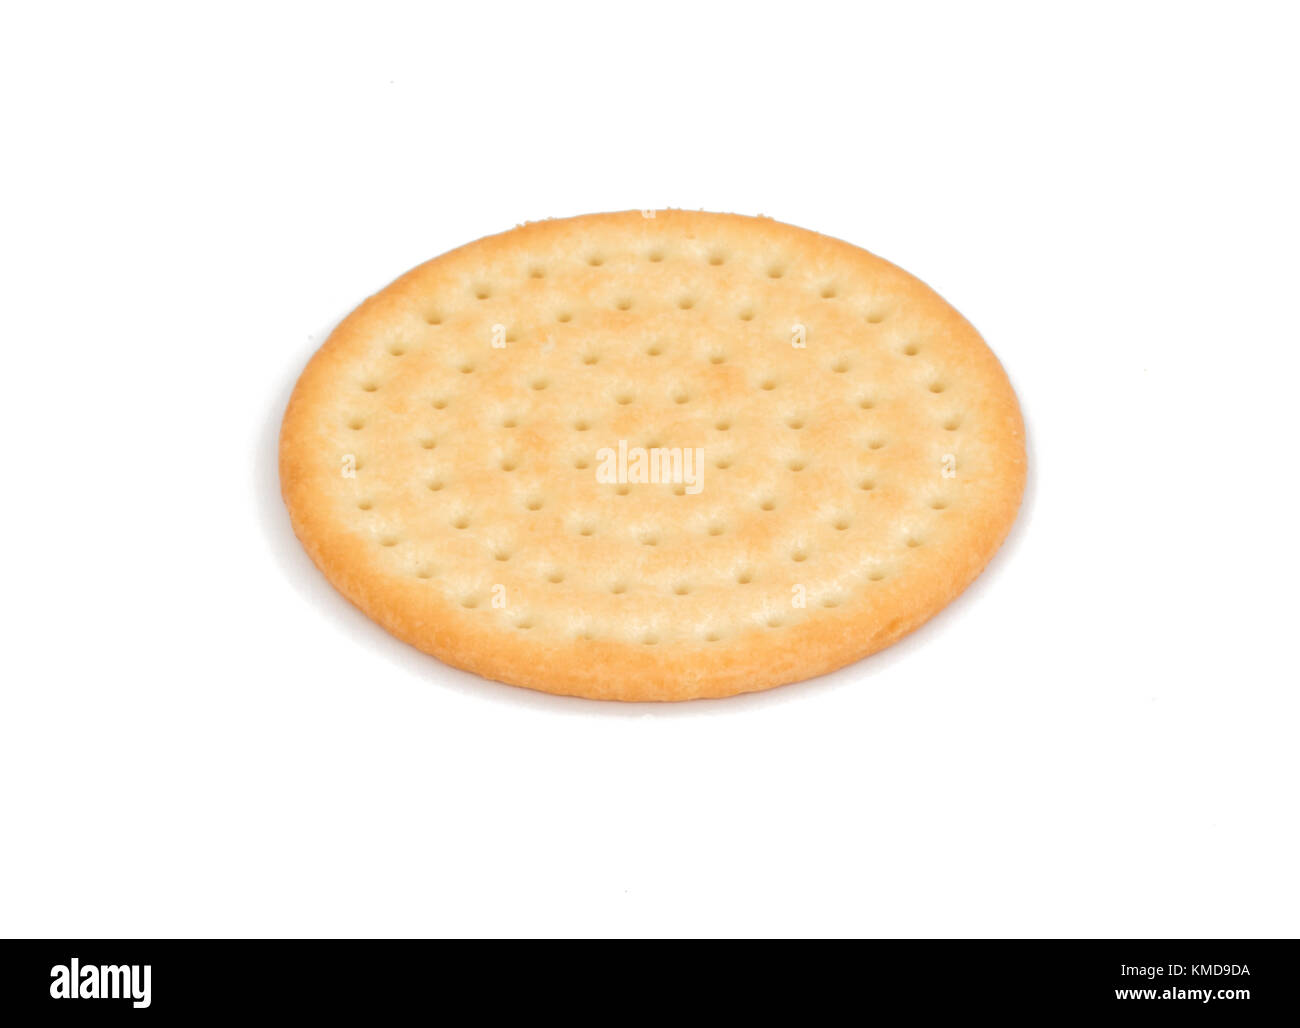 Turno unico generic snack biscotto cracker isolati su sfondo bianco Foto Stock